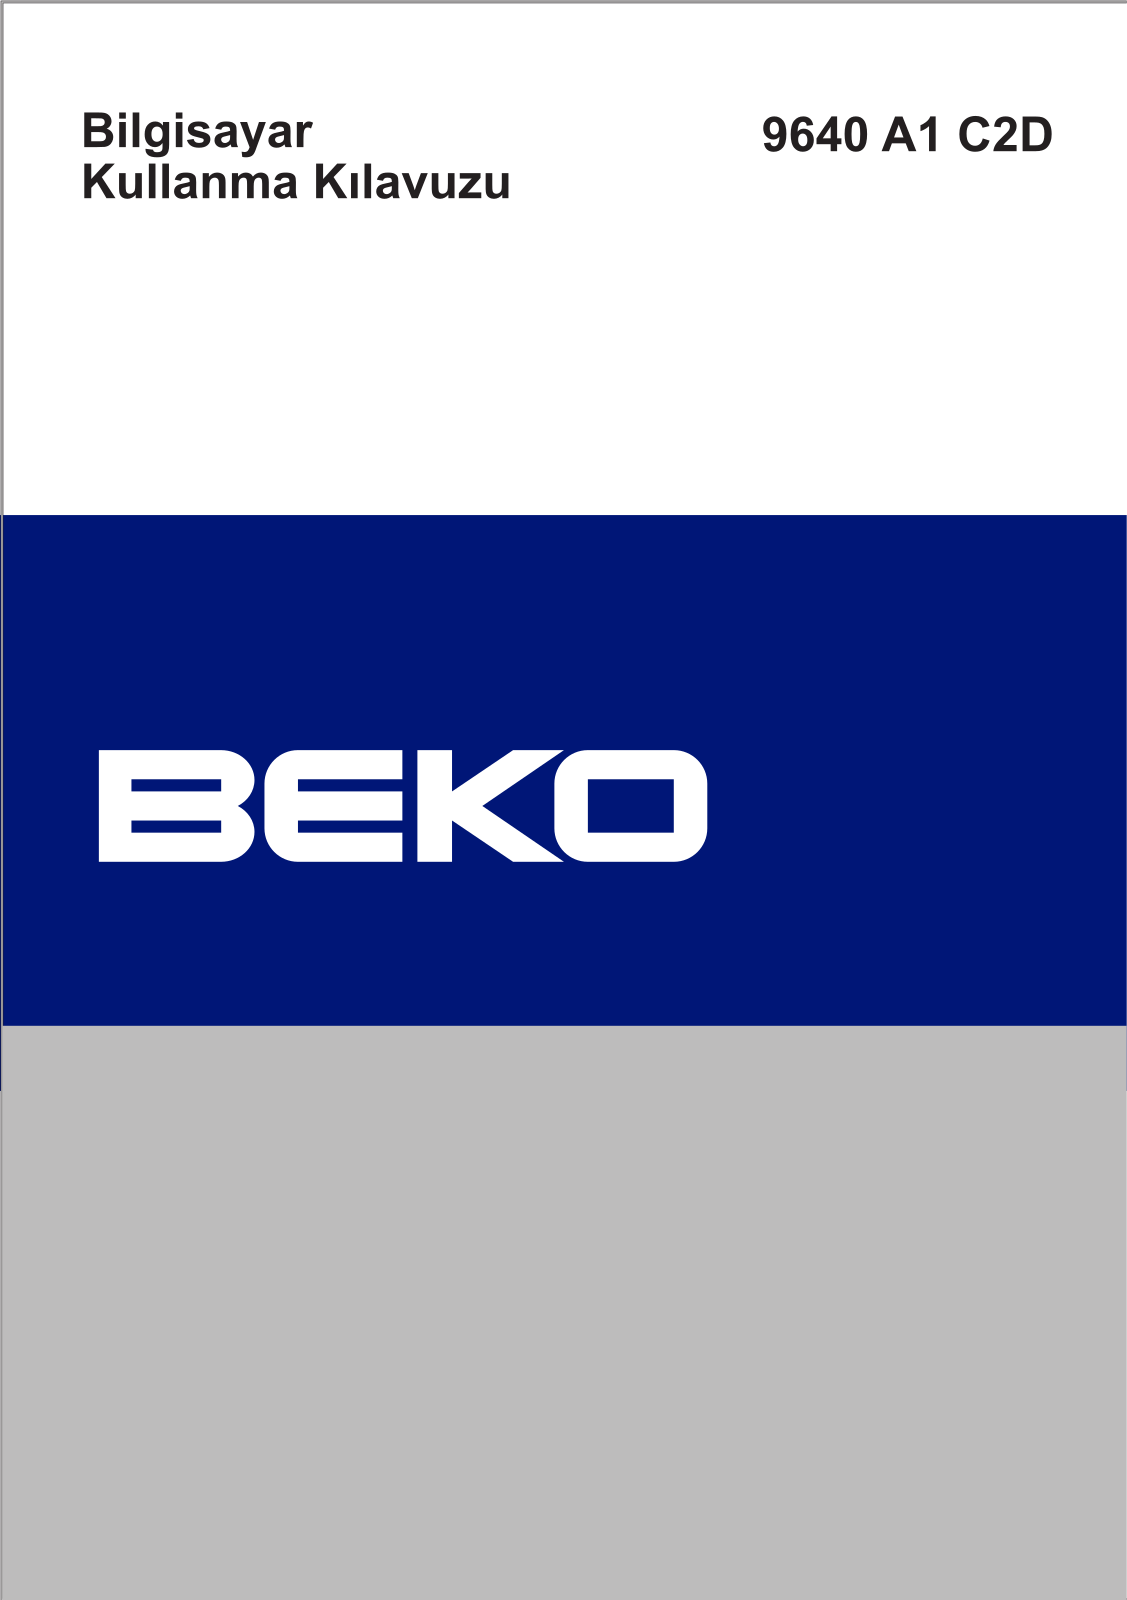 Beko 9640 A1 C2D Manual